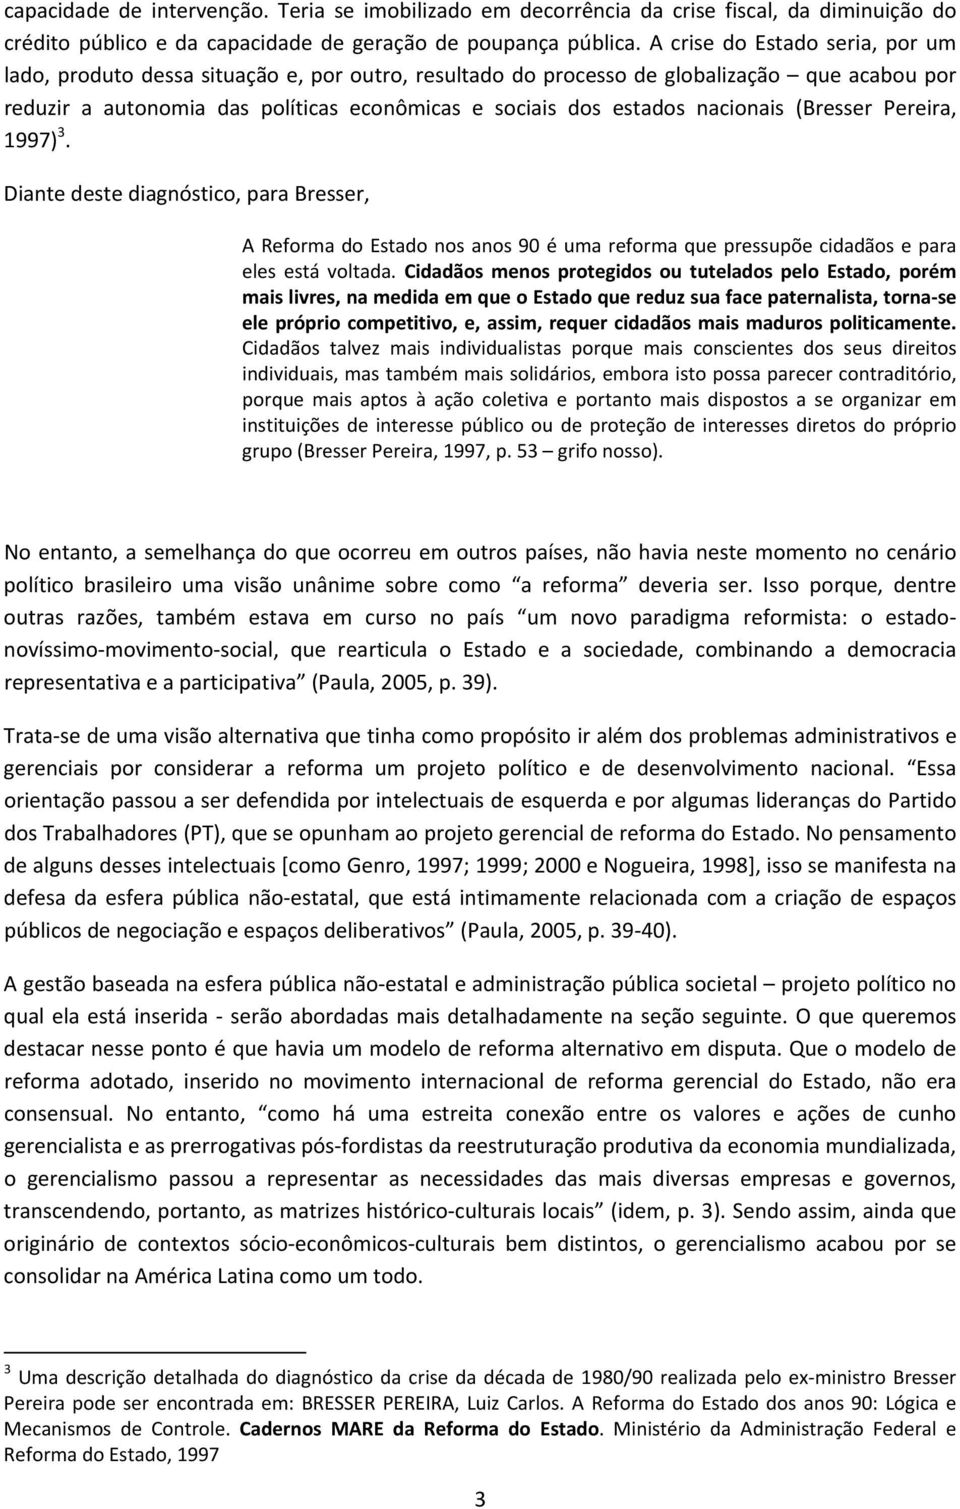 nacionais (Bresser Pereira, 1997) 3. Diante deste diagnóstico, para Bresser, A Reforma do Estado nos anos 90 é uma reforma que pressupõe cidadãos e para eles está voltada.